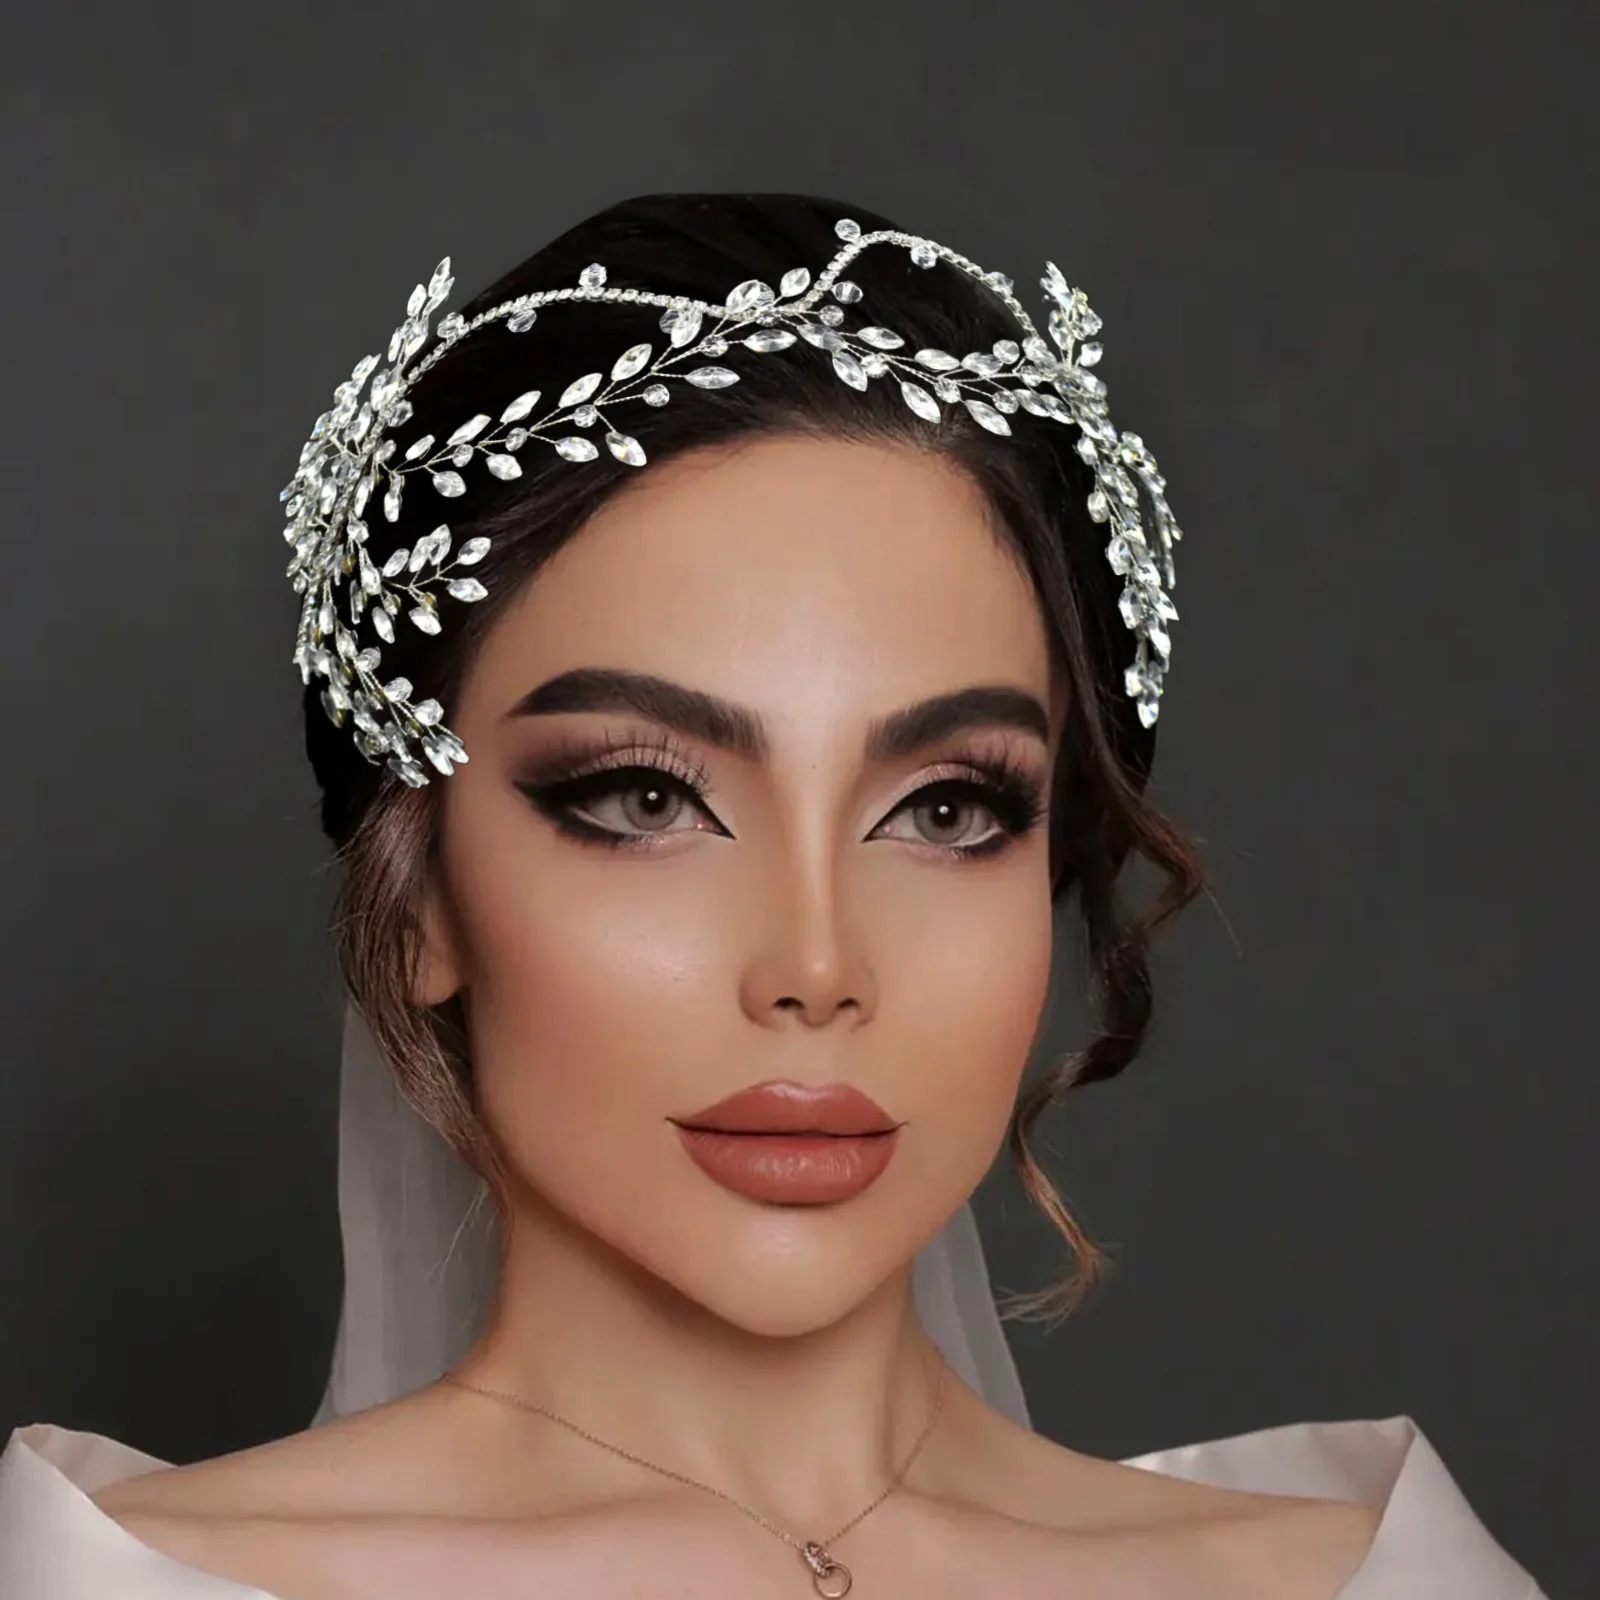 

ROMANTIC Silver Rhinestone Headband Luxury Wedding Crystal Bridal Hair Accessory Headpiece